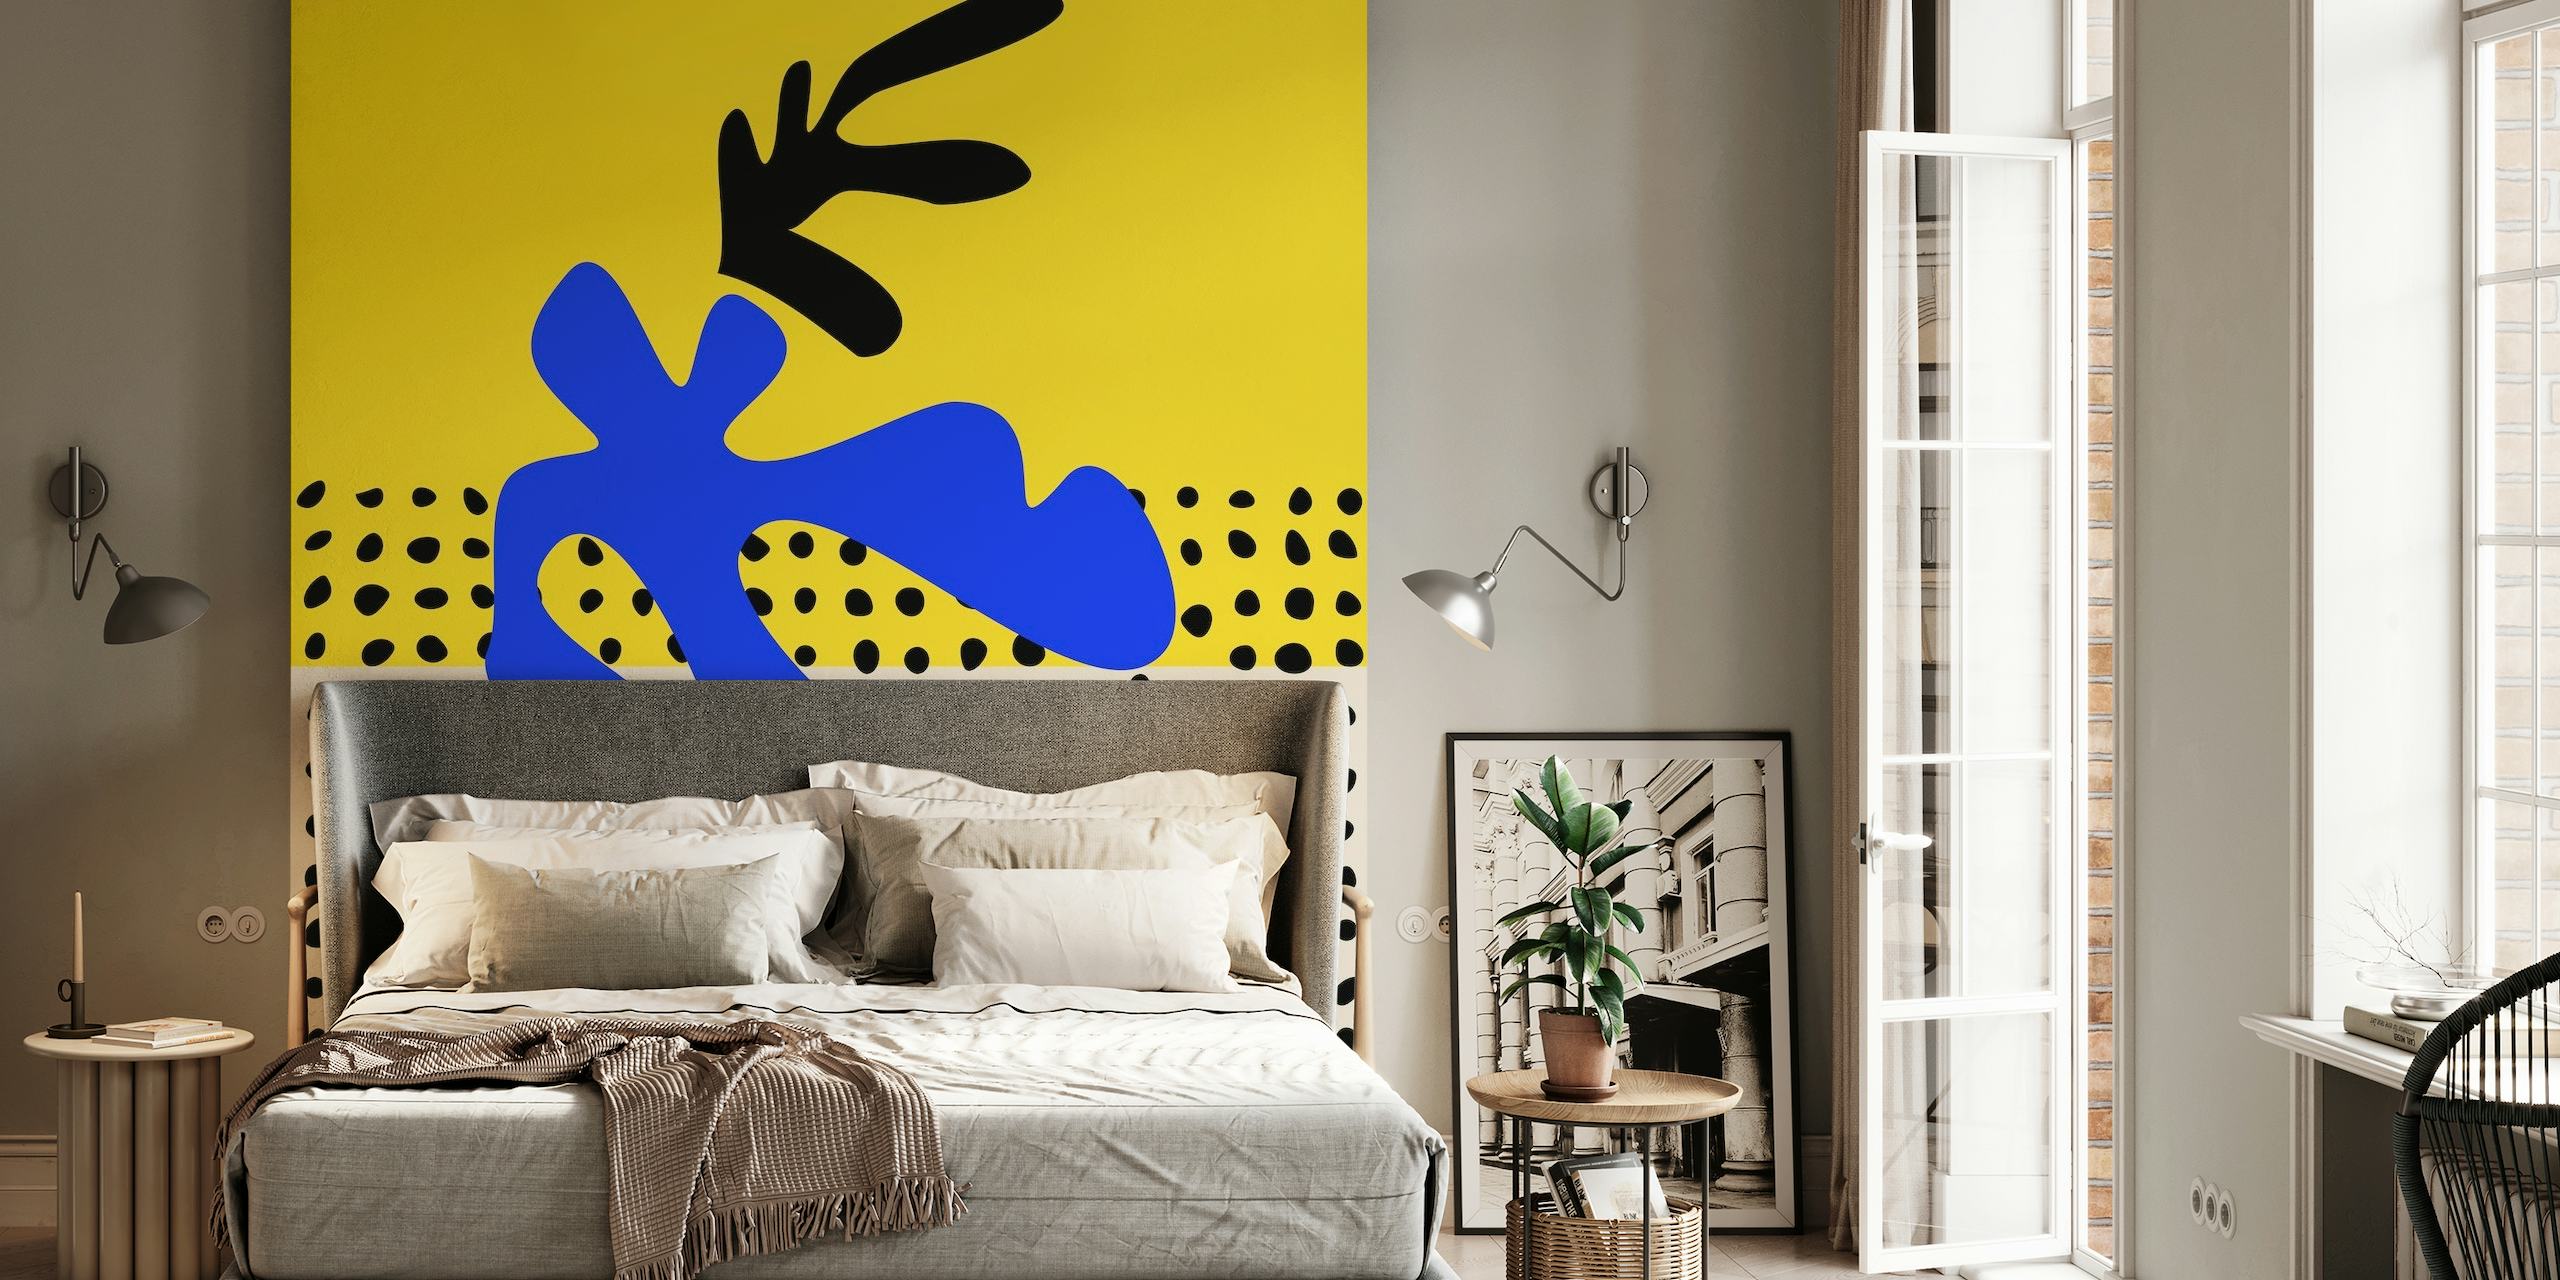 Vibrant Matisse Inspired Art wallpaper